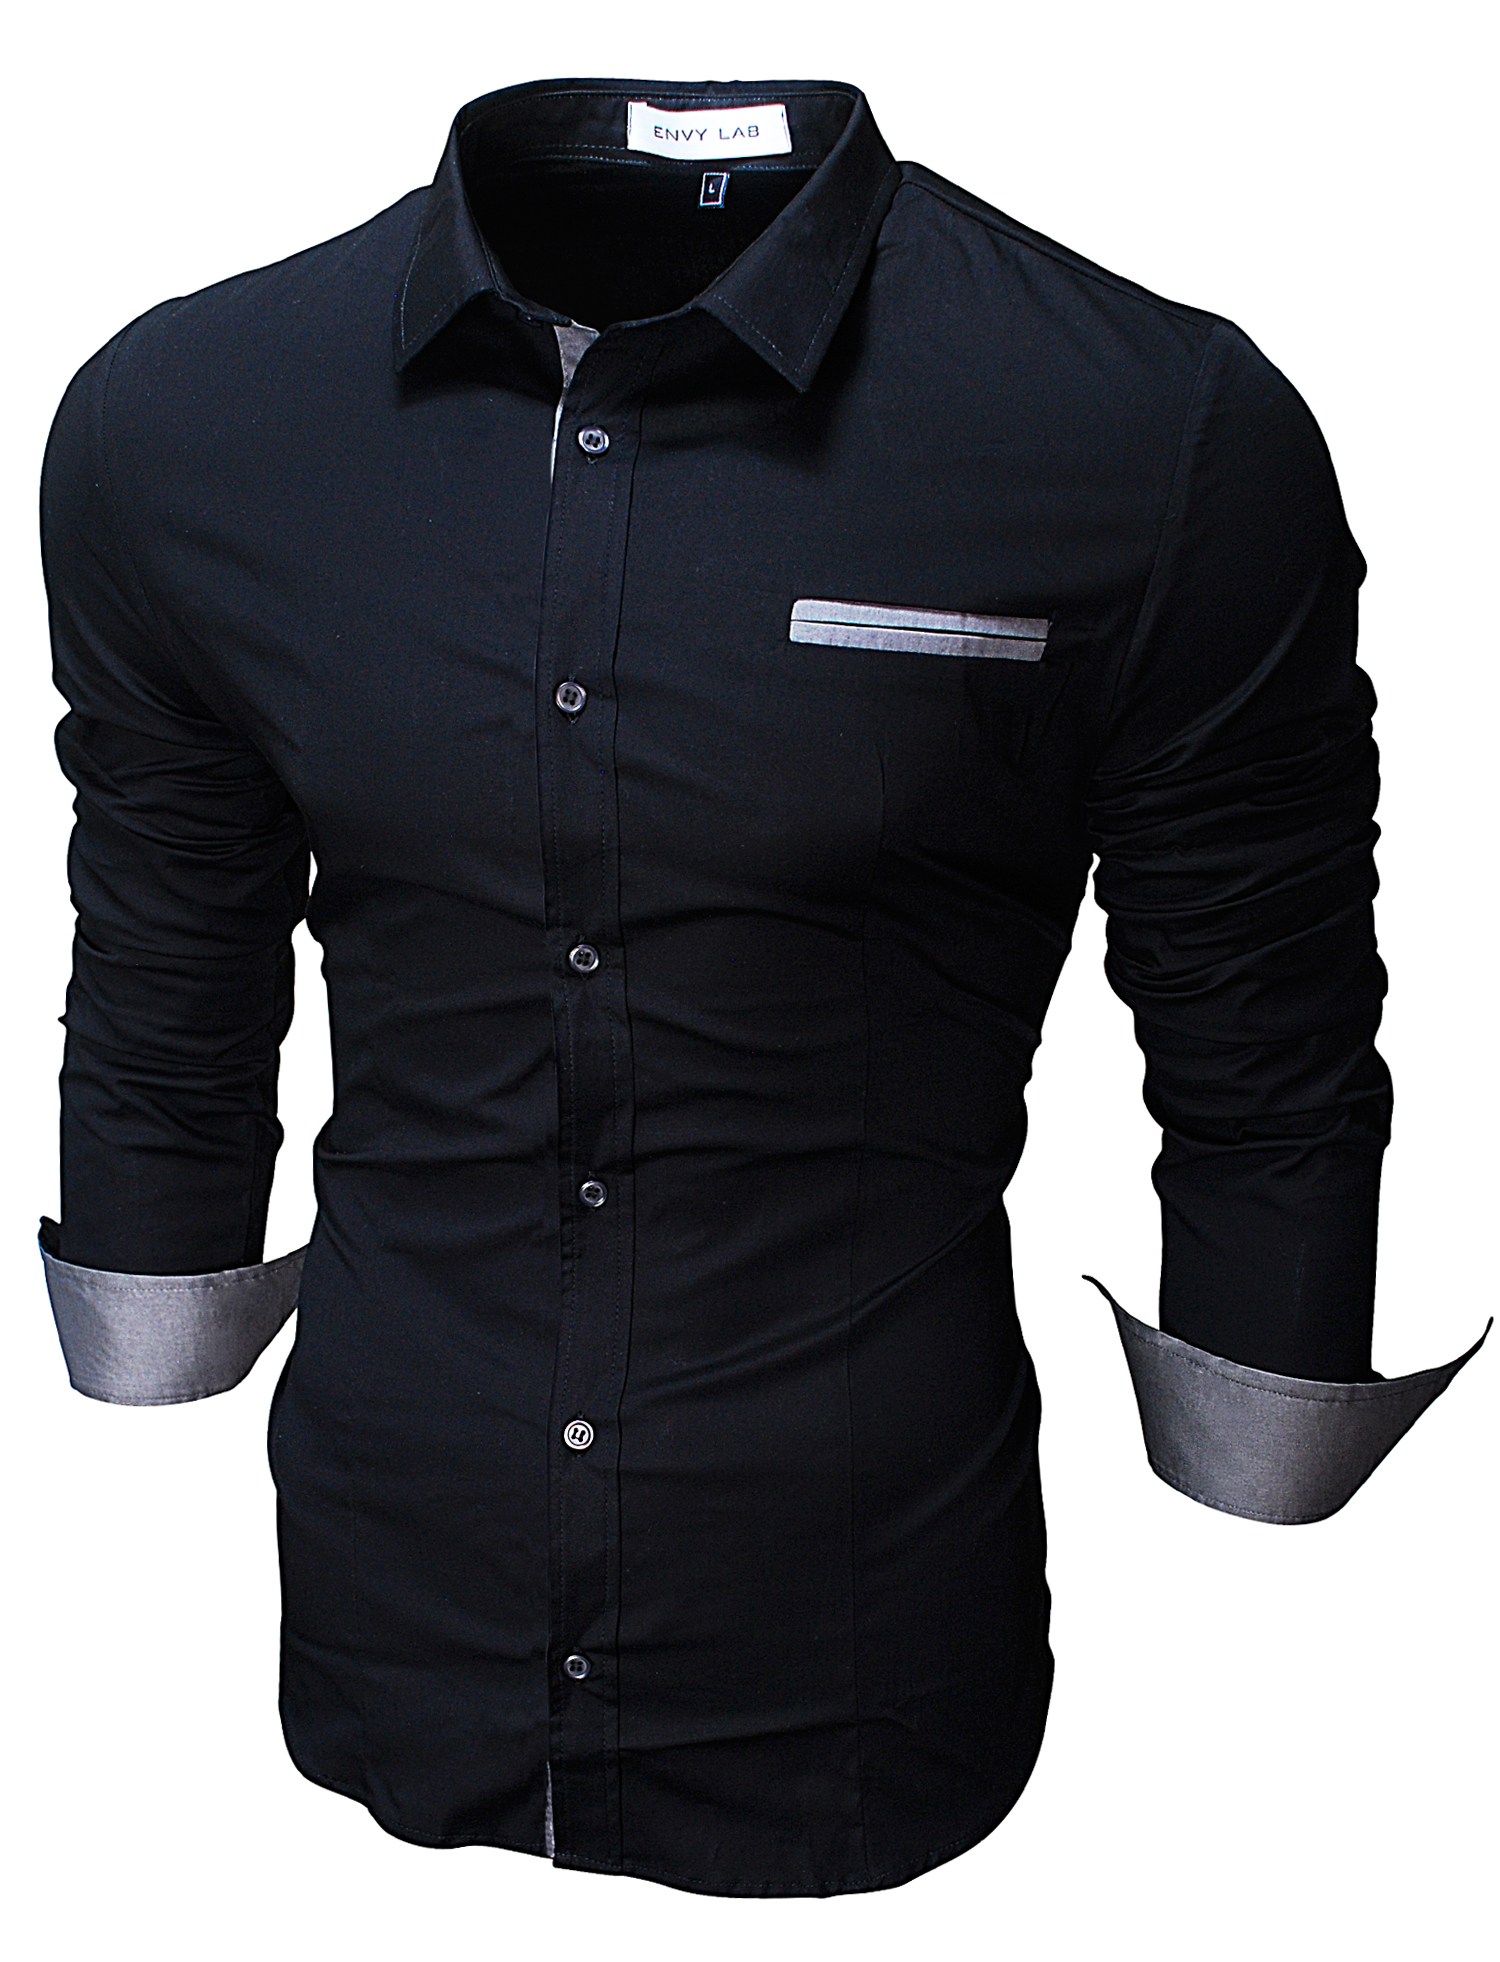 Красивая черная рубашка. Рубашка Envy Lab мужская. Чёрная рубашка Envy Lab. Мужская белая сорочка Envy Lab. Envy Lab мантия.